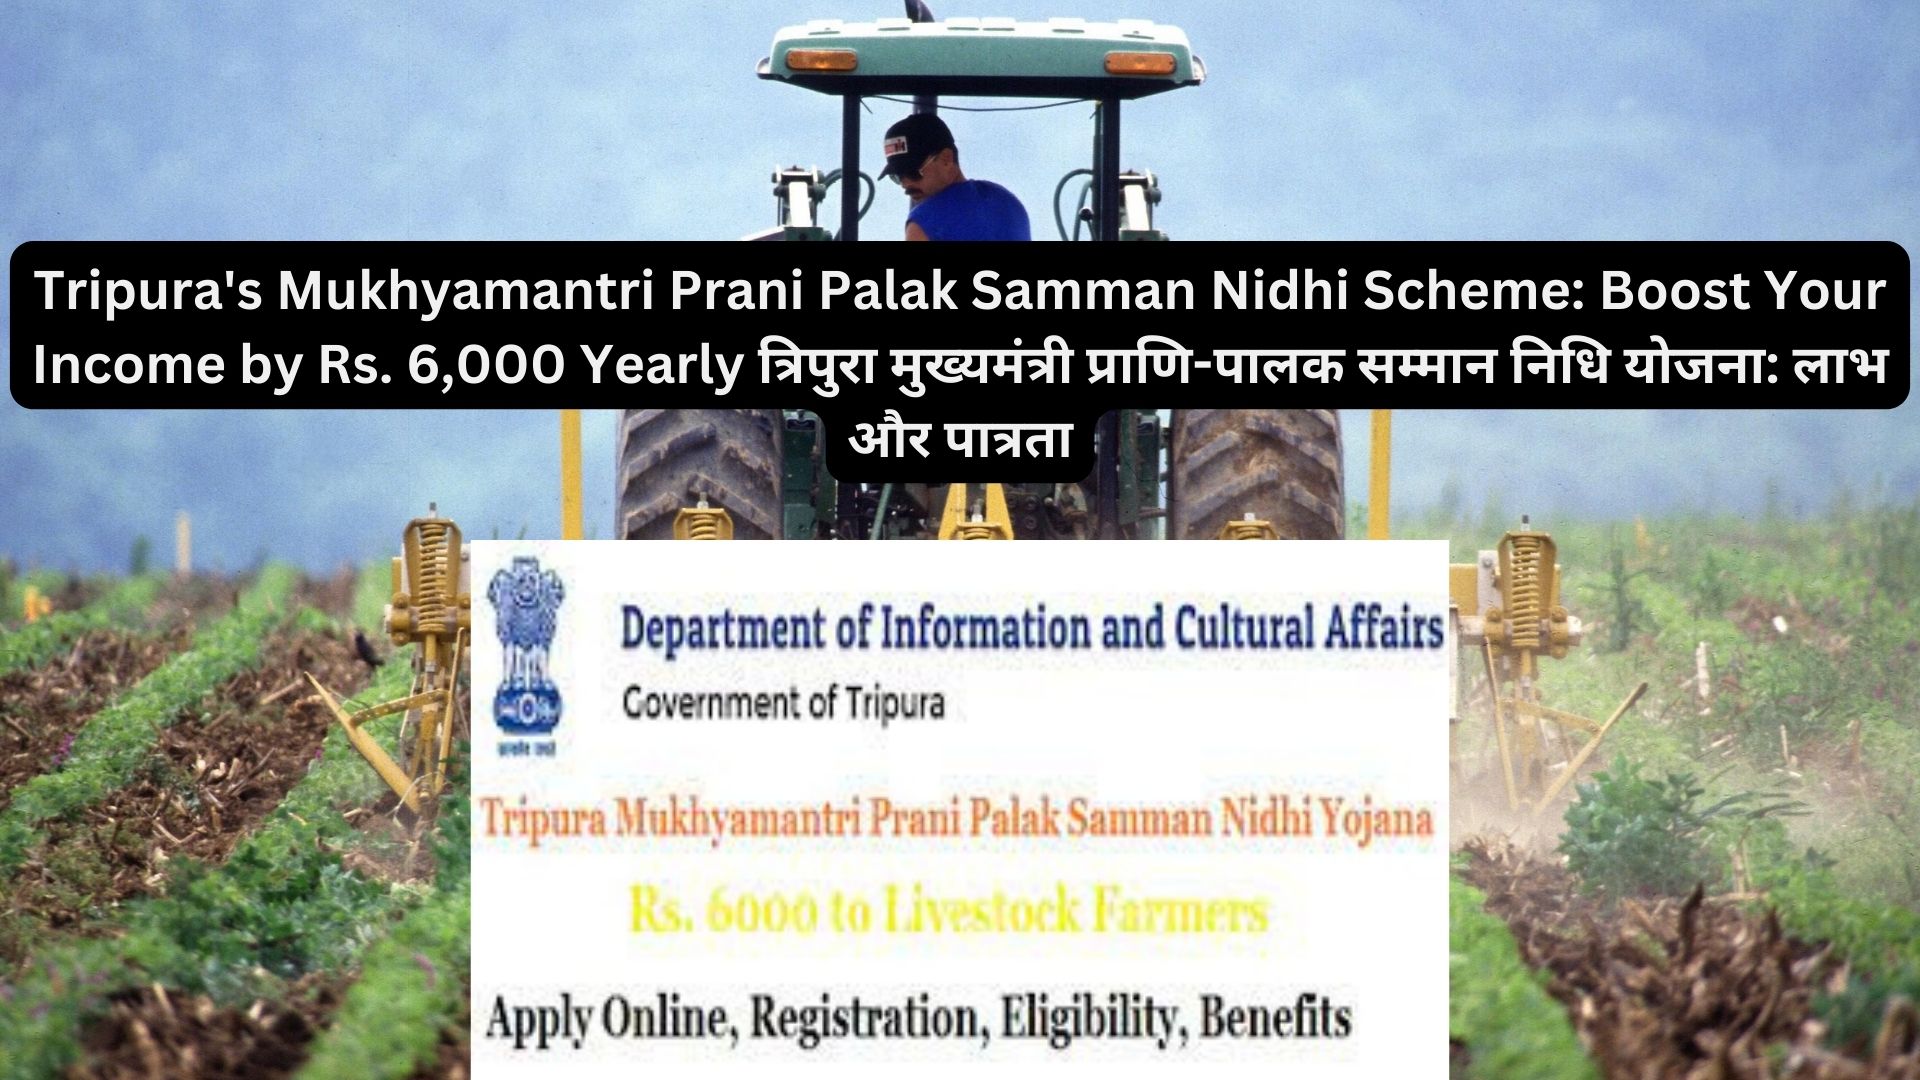 Tripura's Mukhyamantri Prani Palak Samman Nidhi Scheme: Boost Your Income by Rs. 6,000 Yearly त्रिपुरा मुख्यमंत्री प्राणि-पालक सम्मान निधि योजना: लाभ और पात्रता